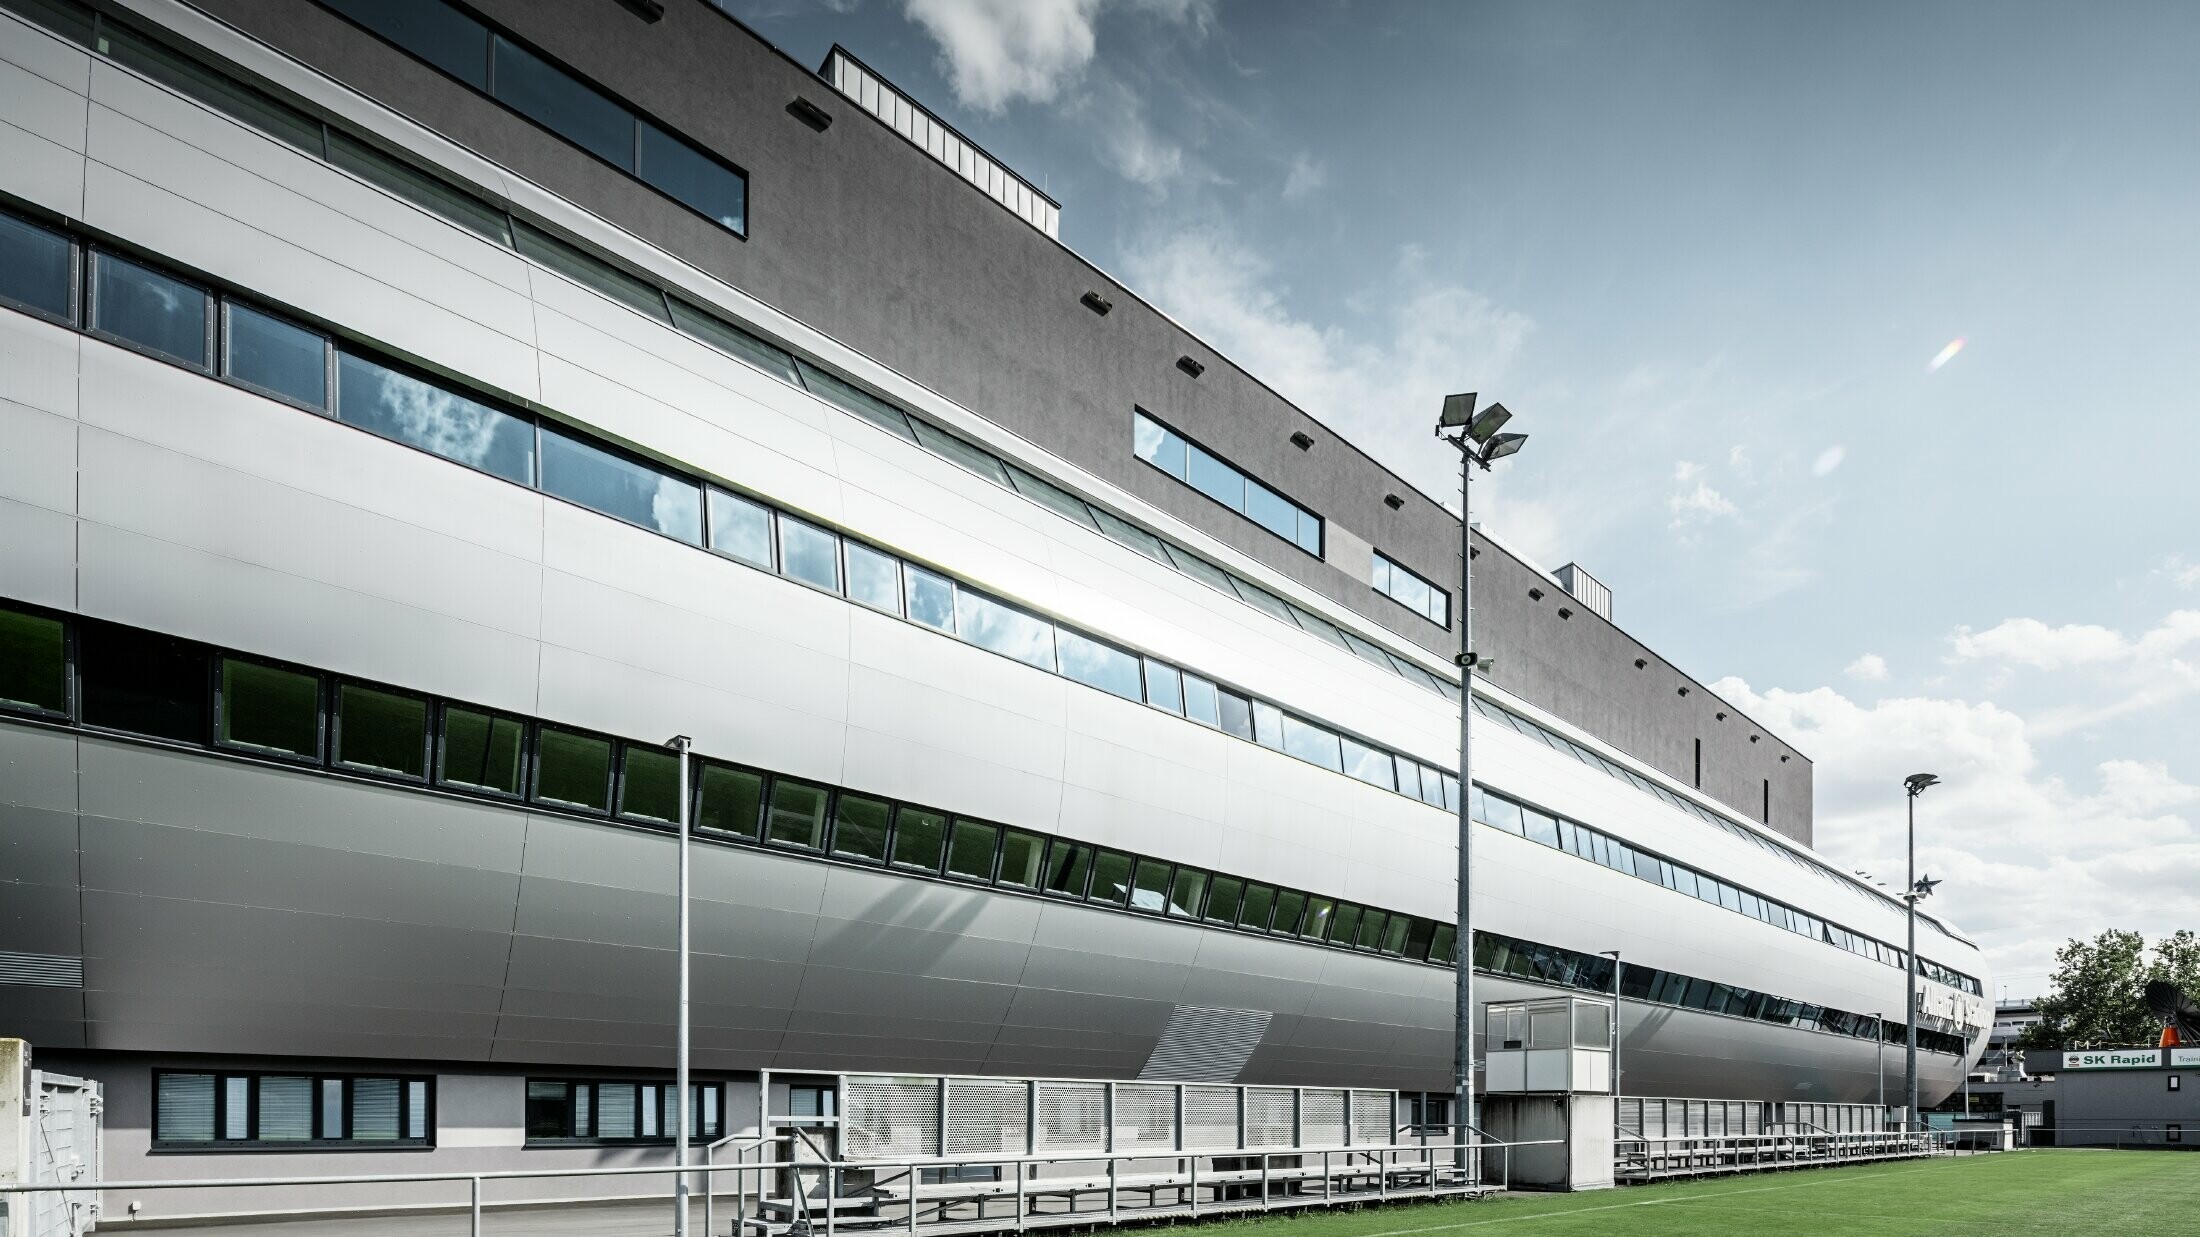 Widok wiedeńskiego Allianz Stadion z boiska treningowego. Rura prowadząca do wnętrza stadionu jest obłożona aluminiową płytą kompozytową PREFA w kolorze srebrny metalik.